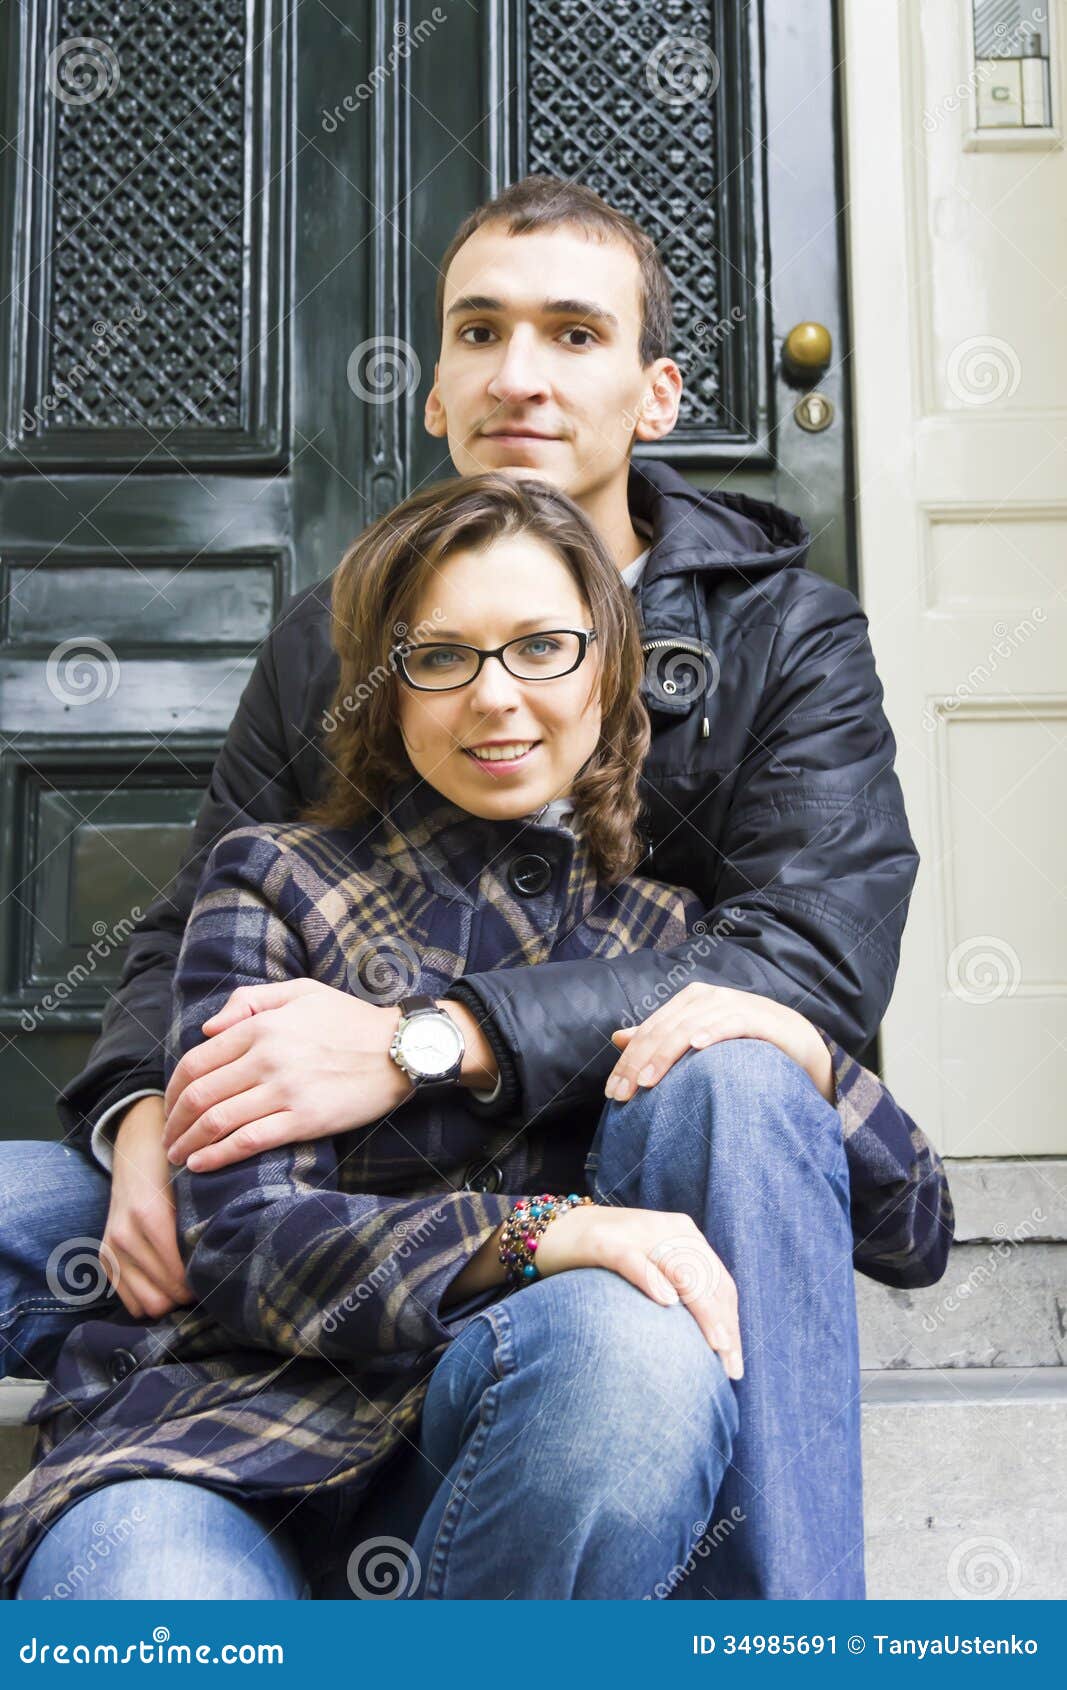 Amateur teen couple dutch image pic